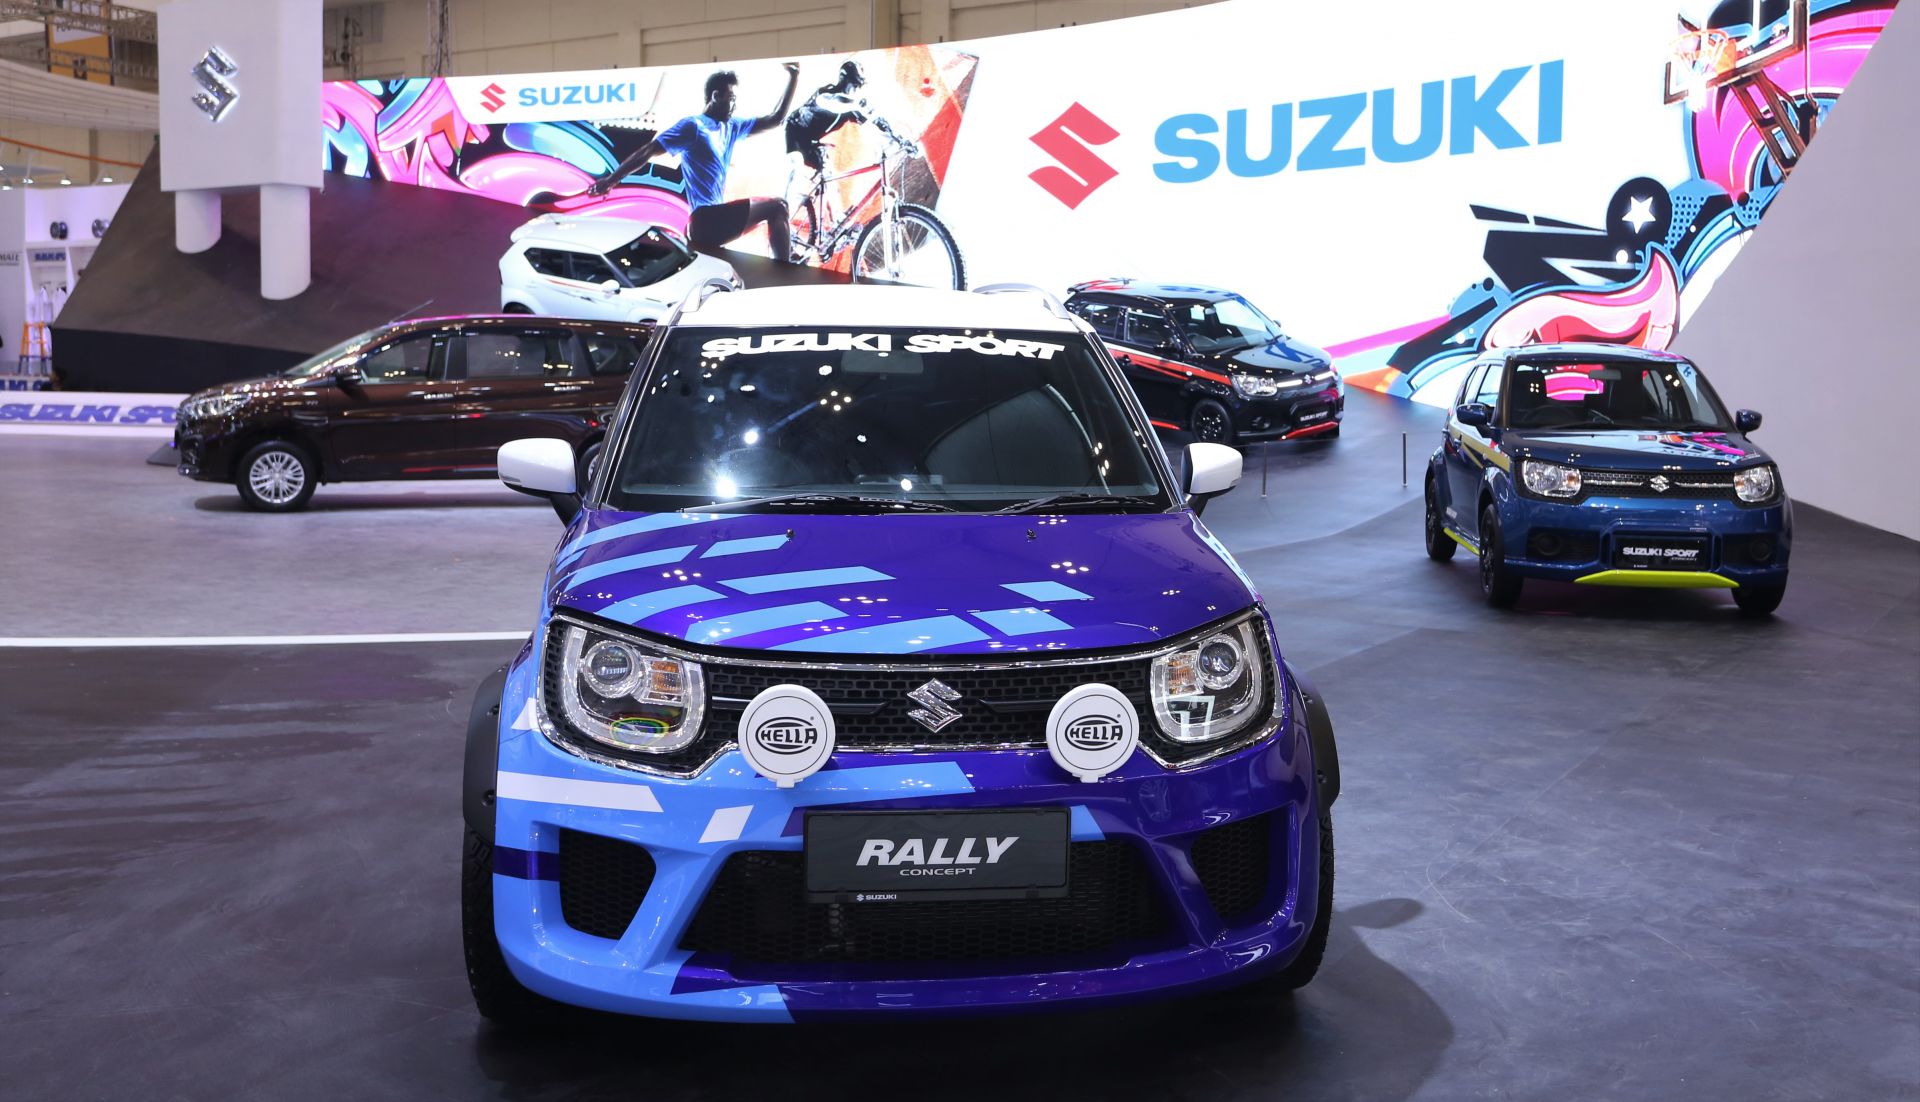 Suzuki Ignis Rally Concept Tampil Gagah Di Giias 2018 Suzuki